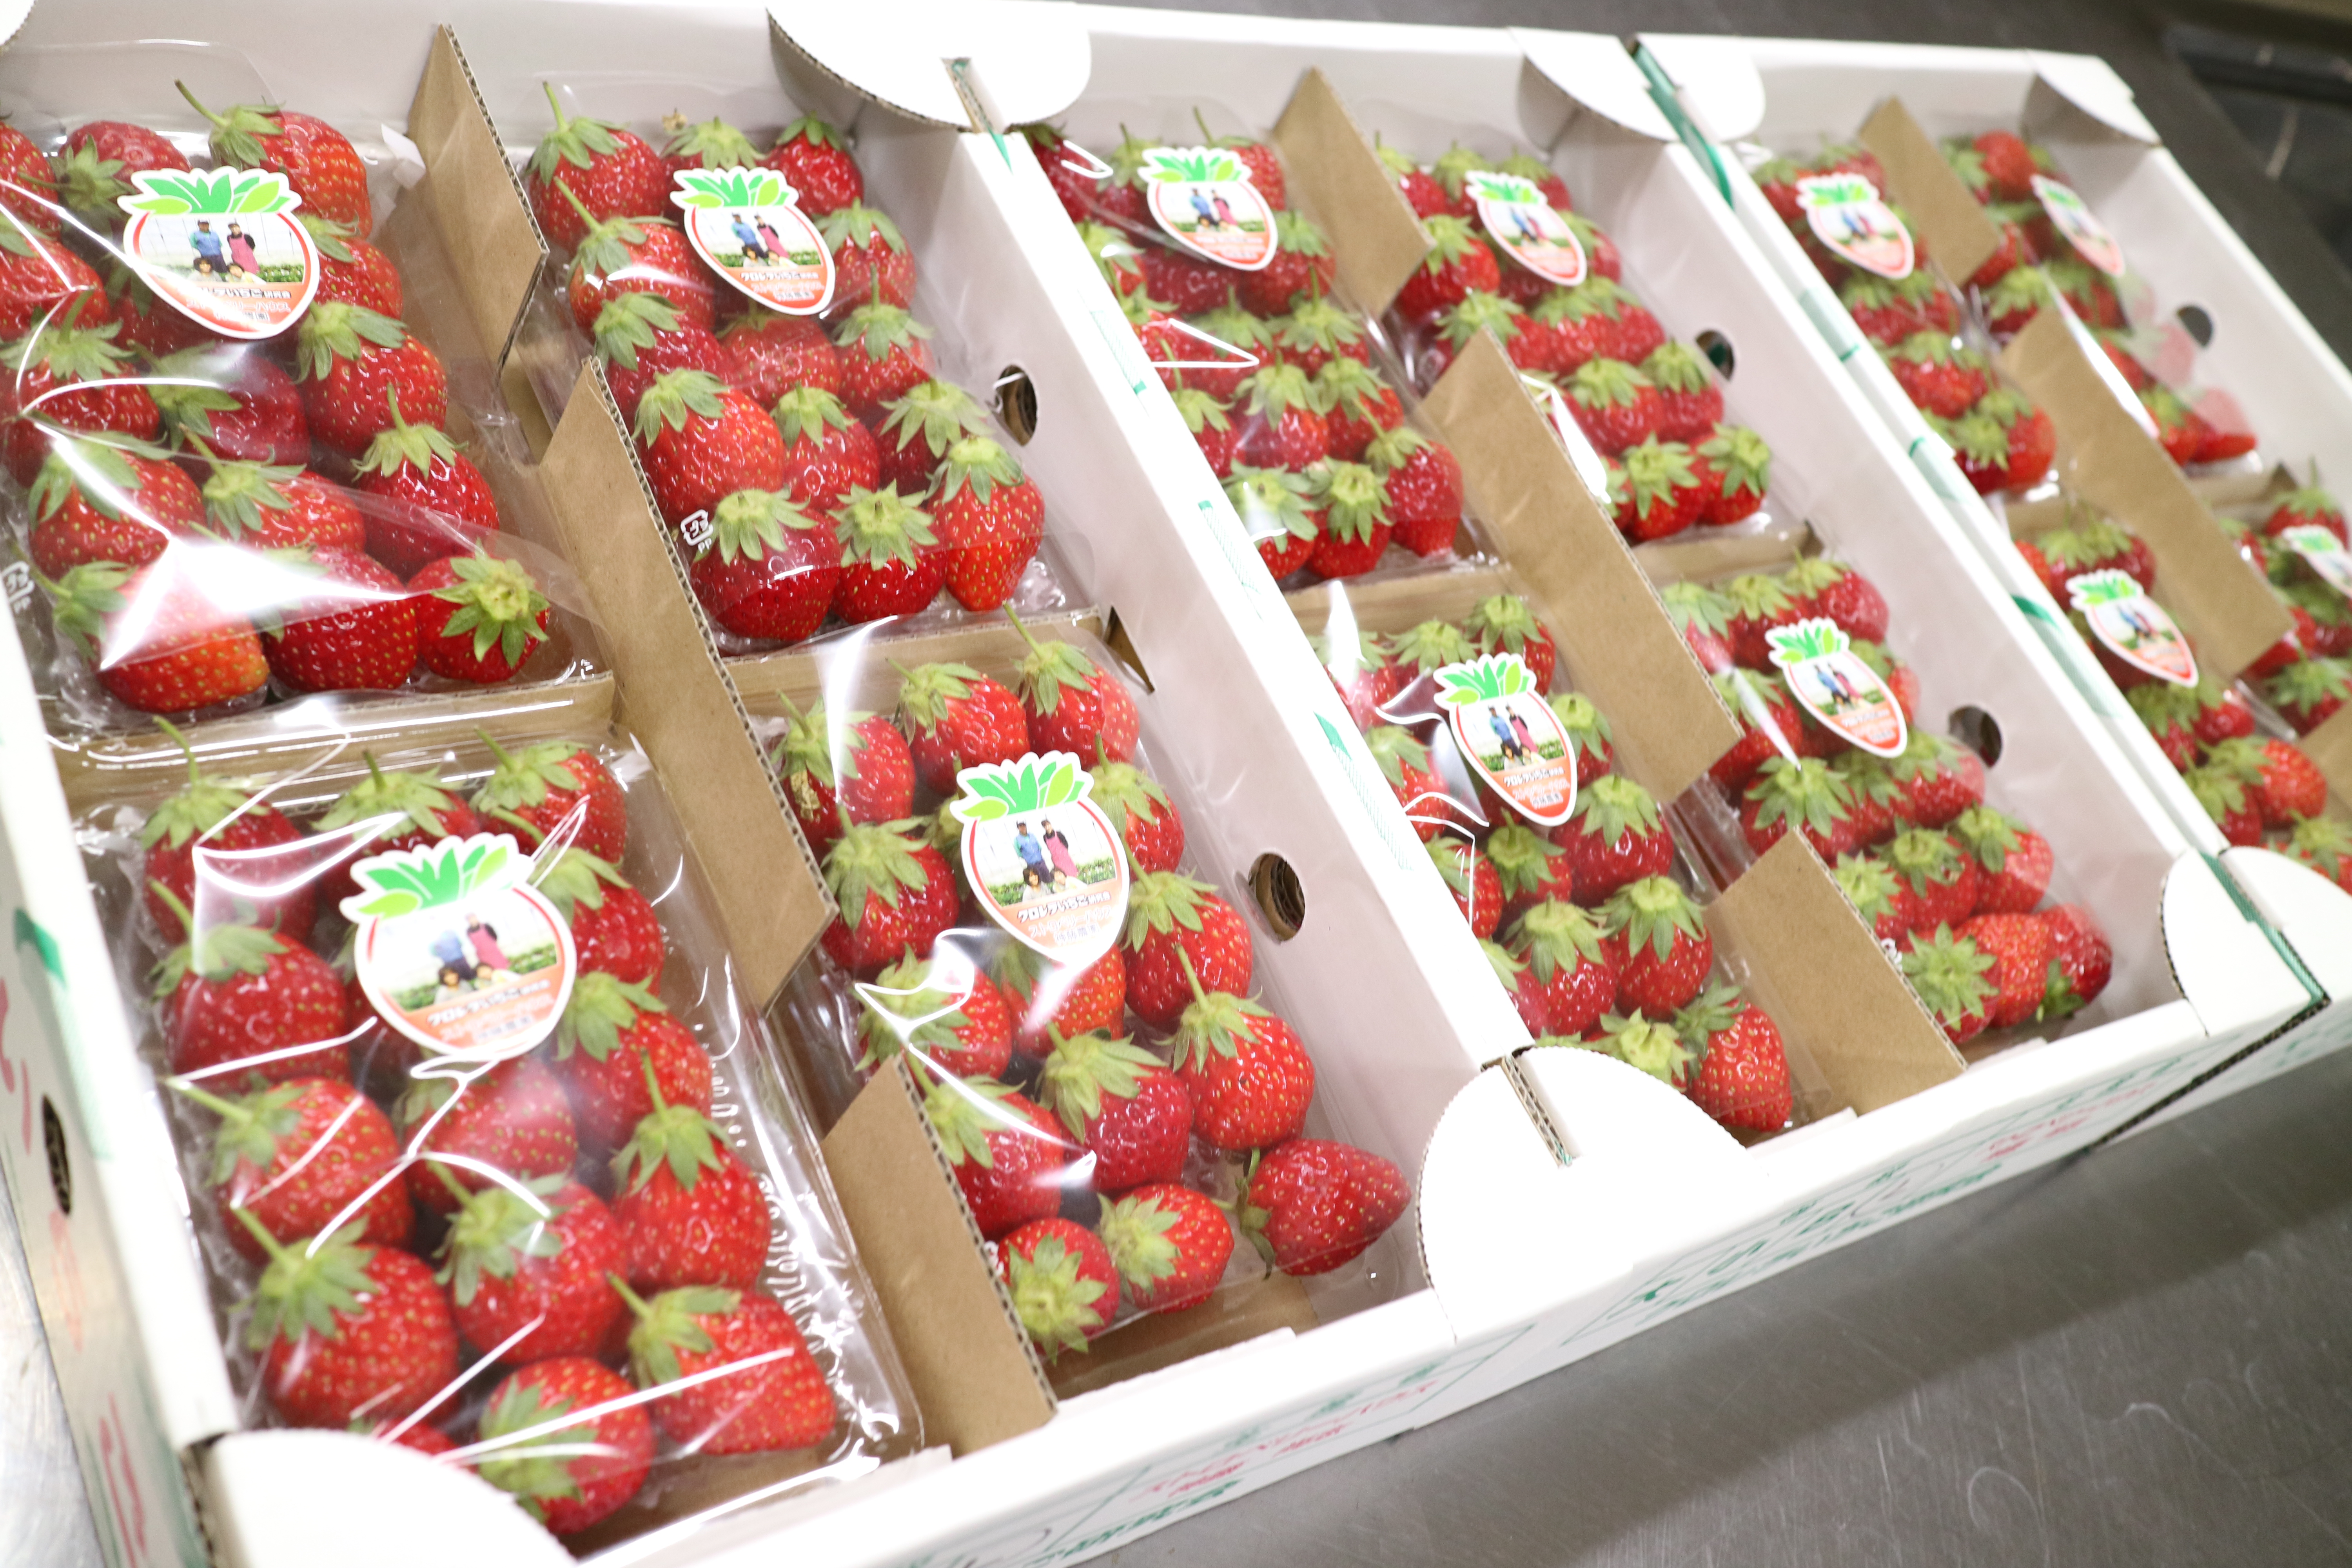  川崎市地方卸売市場南部市場バレンタイン苺チョコ